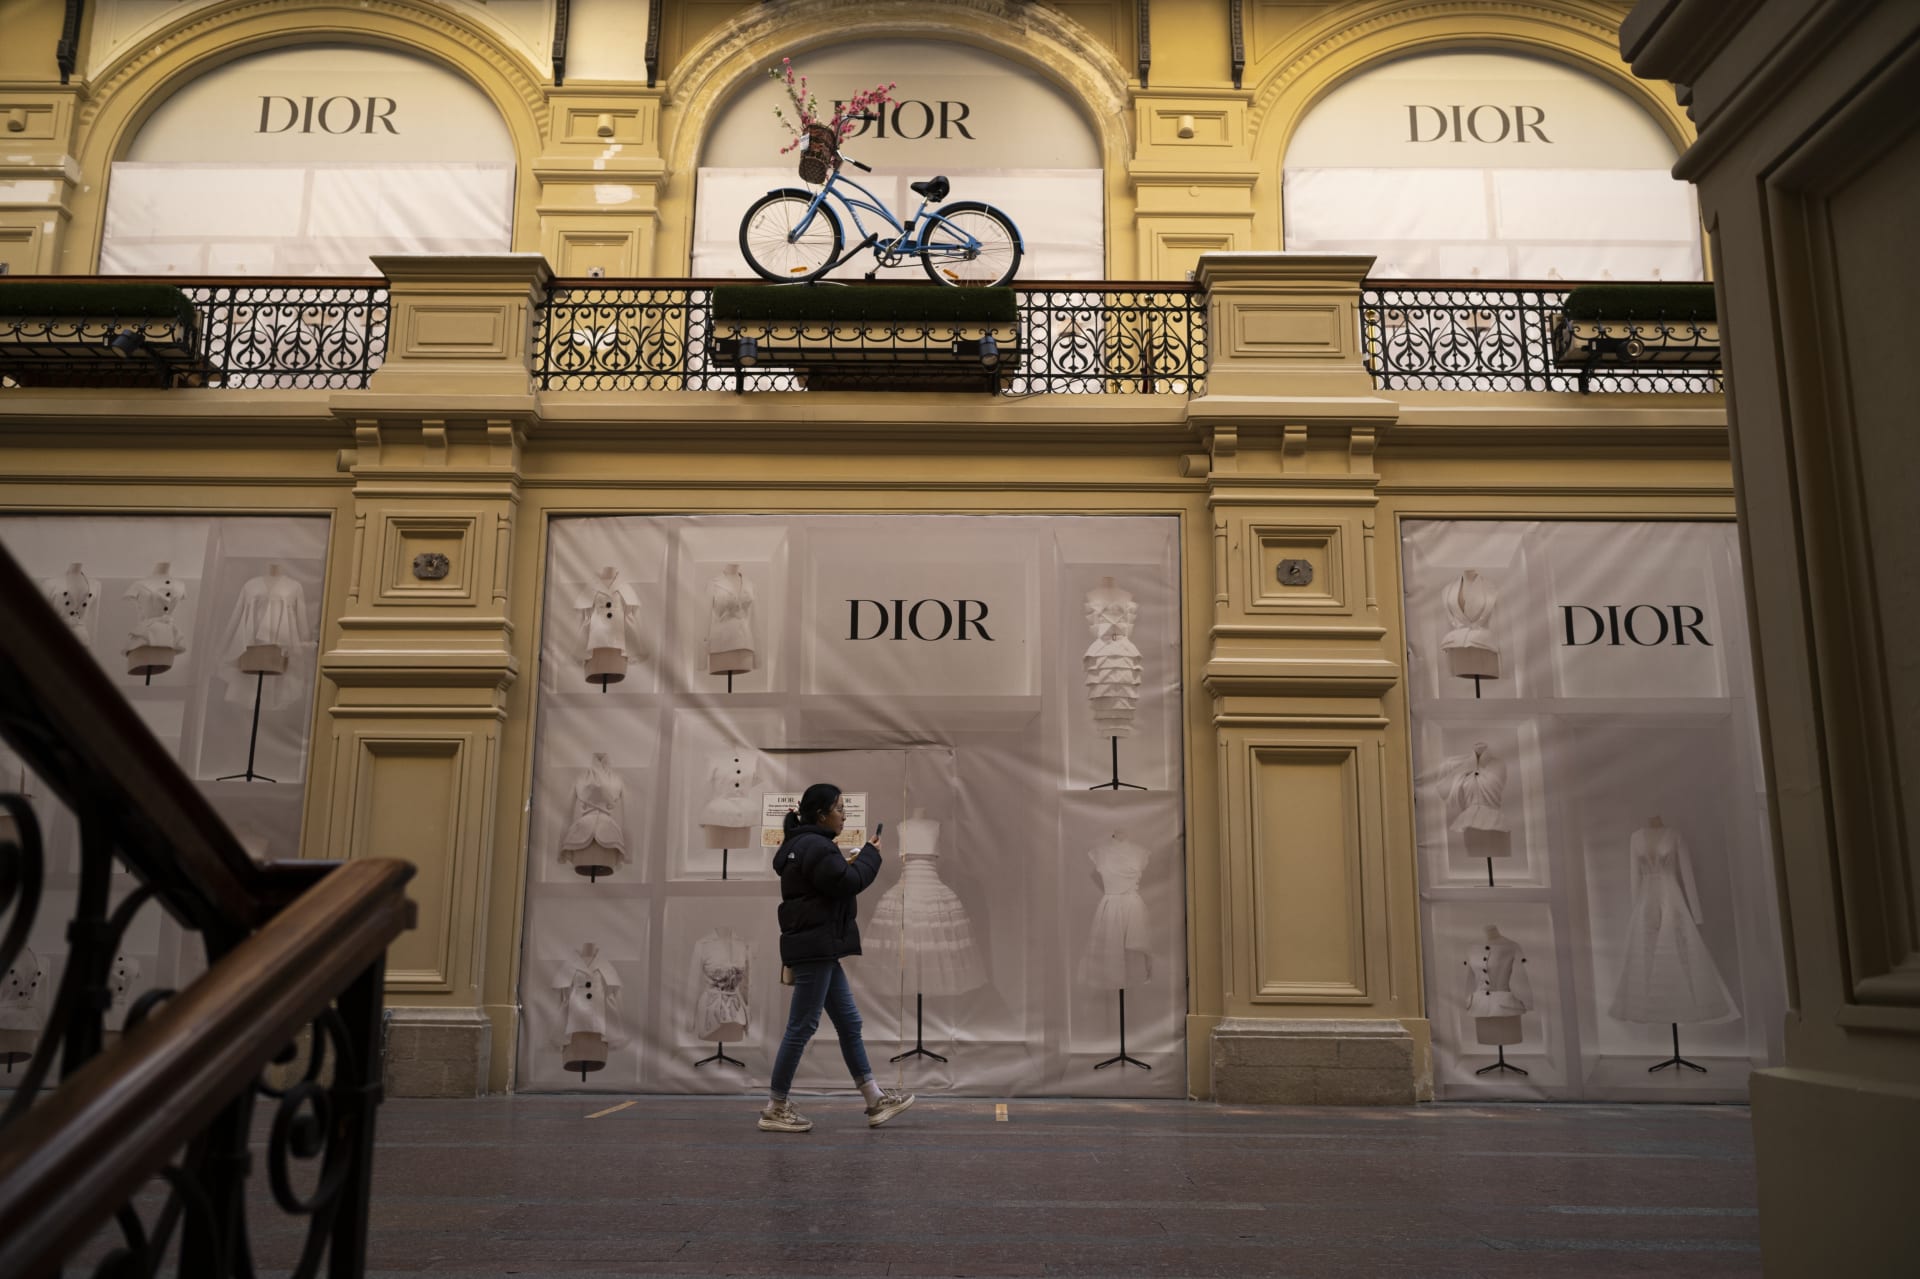 Také společnost Dior uzavřela v Moskvě svou pobočku a zahalila její výlohy.